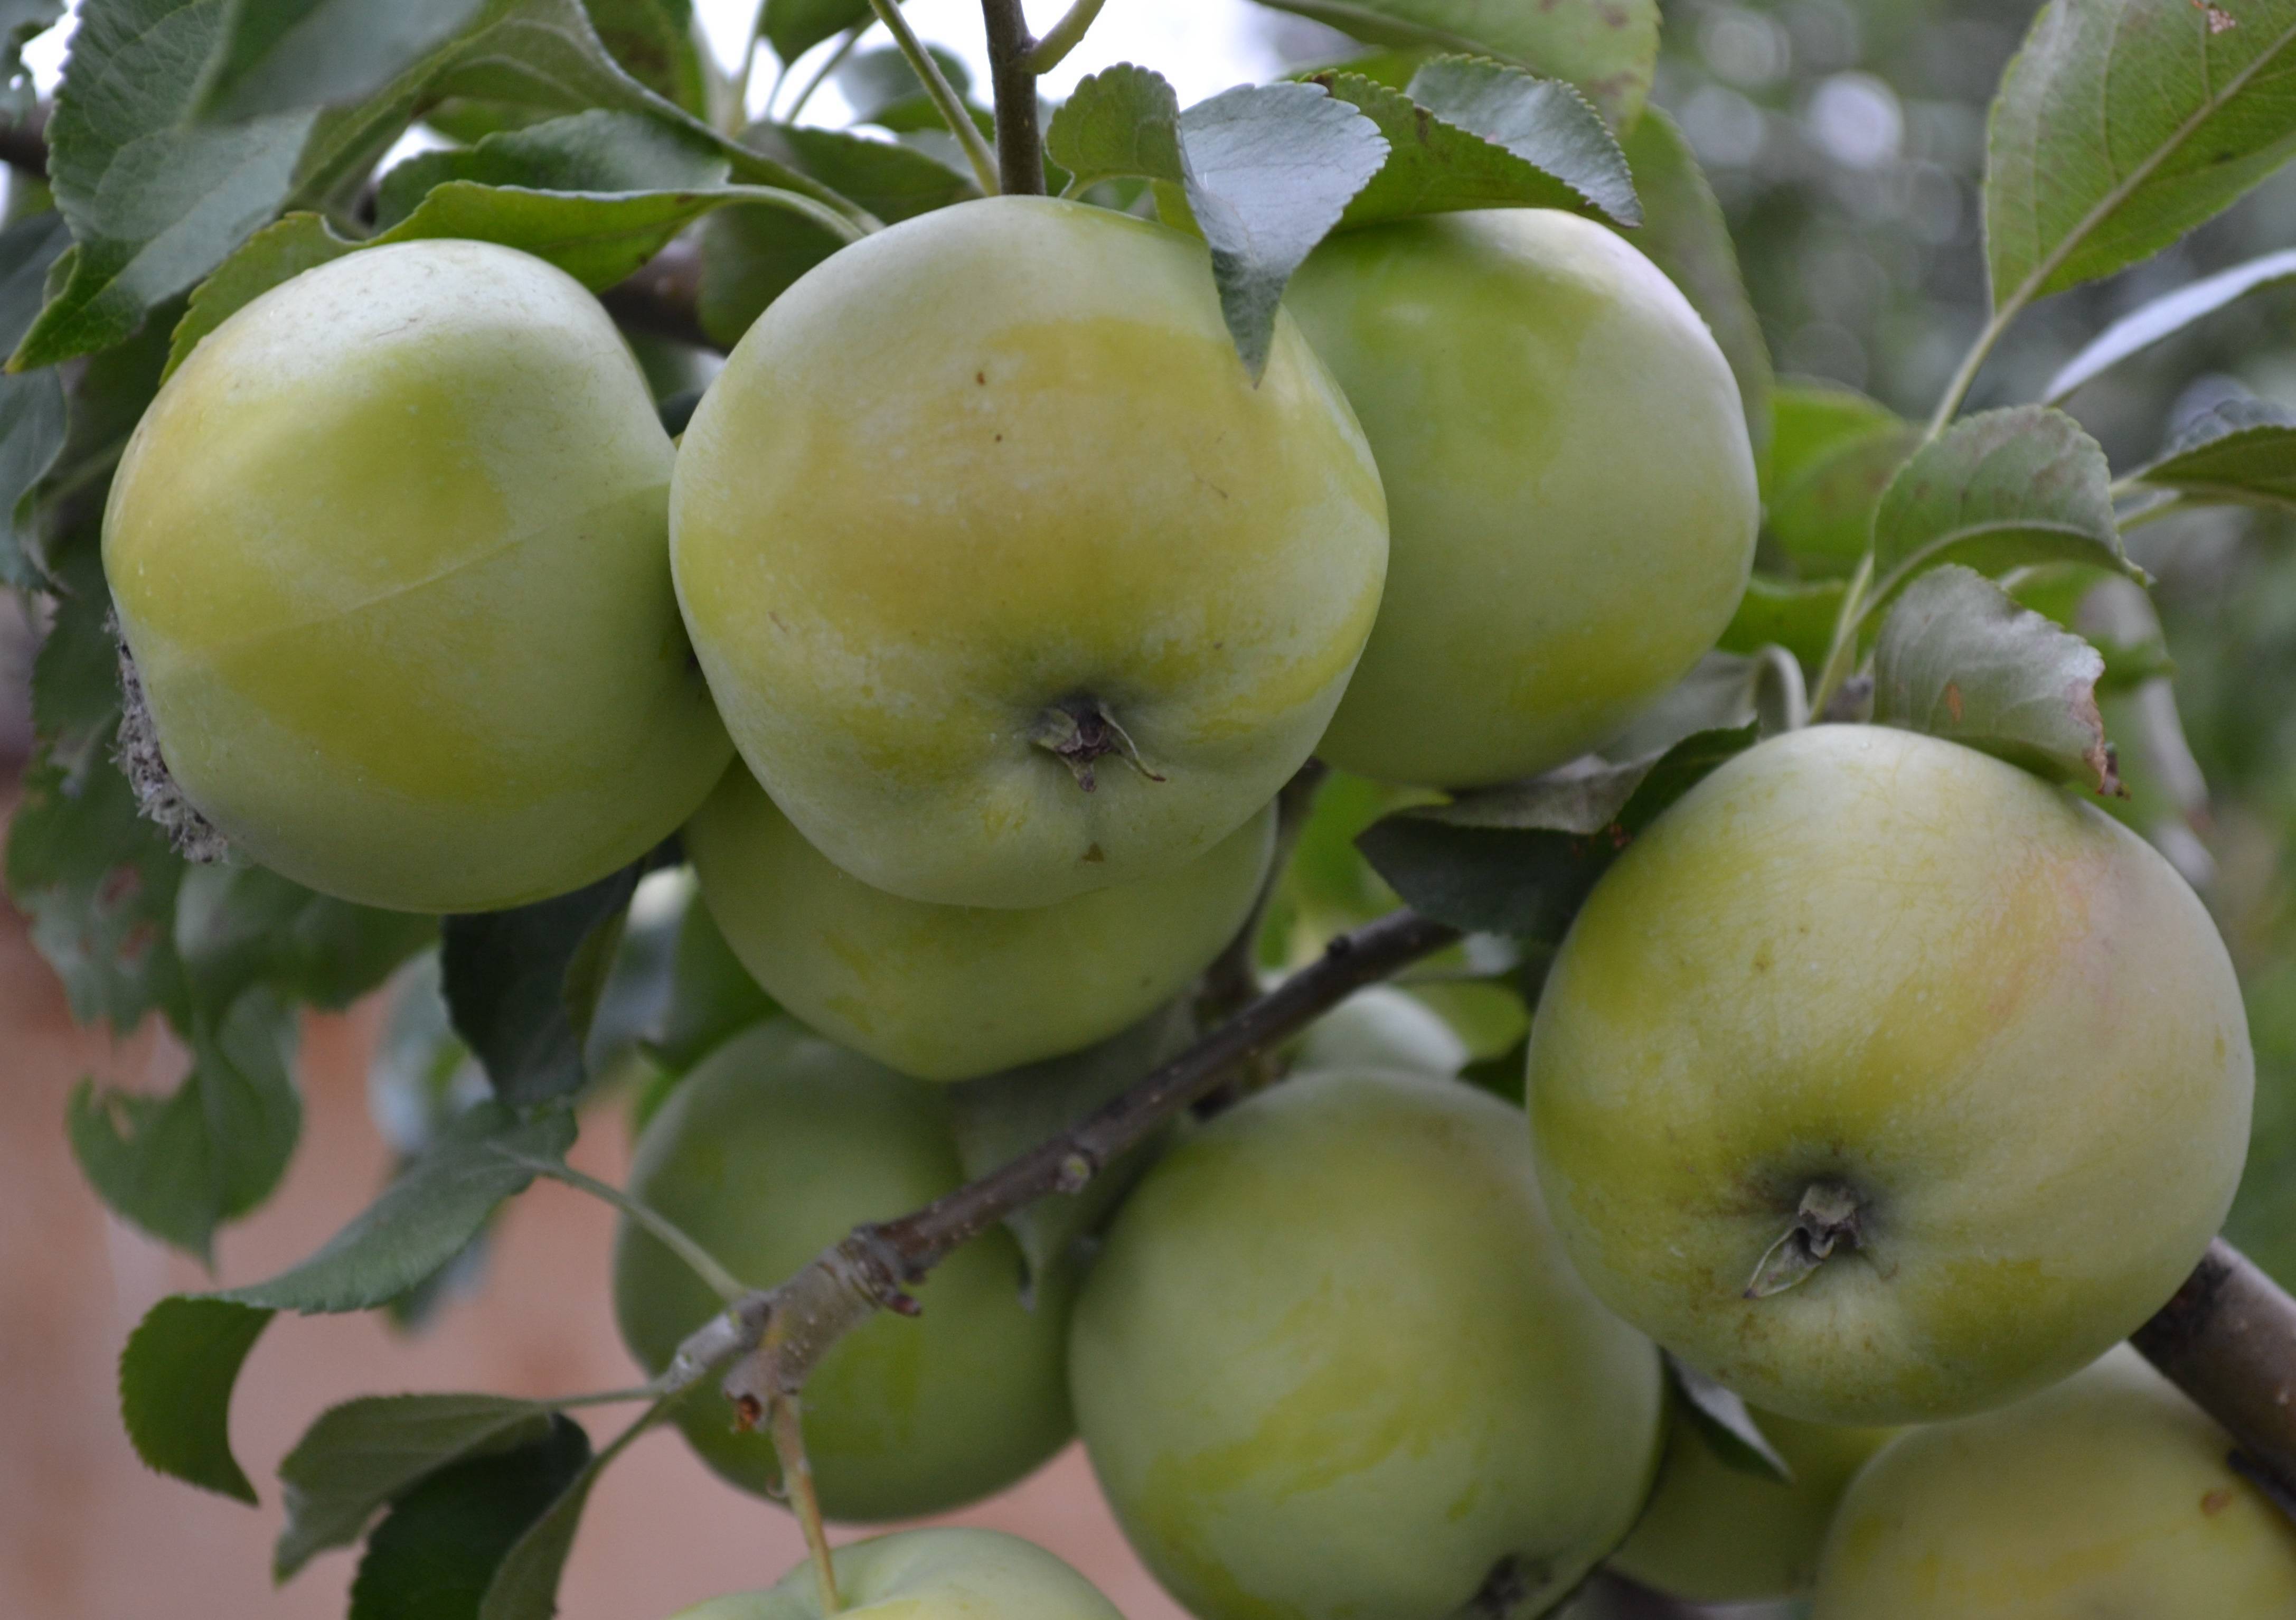 Описание сорта яблони зимняя красавица: фото яблок, важные характеристики, урожайность с дерева